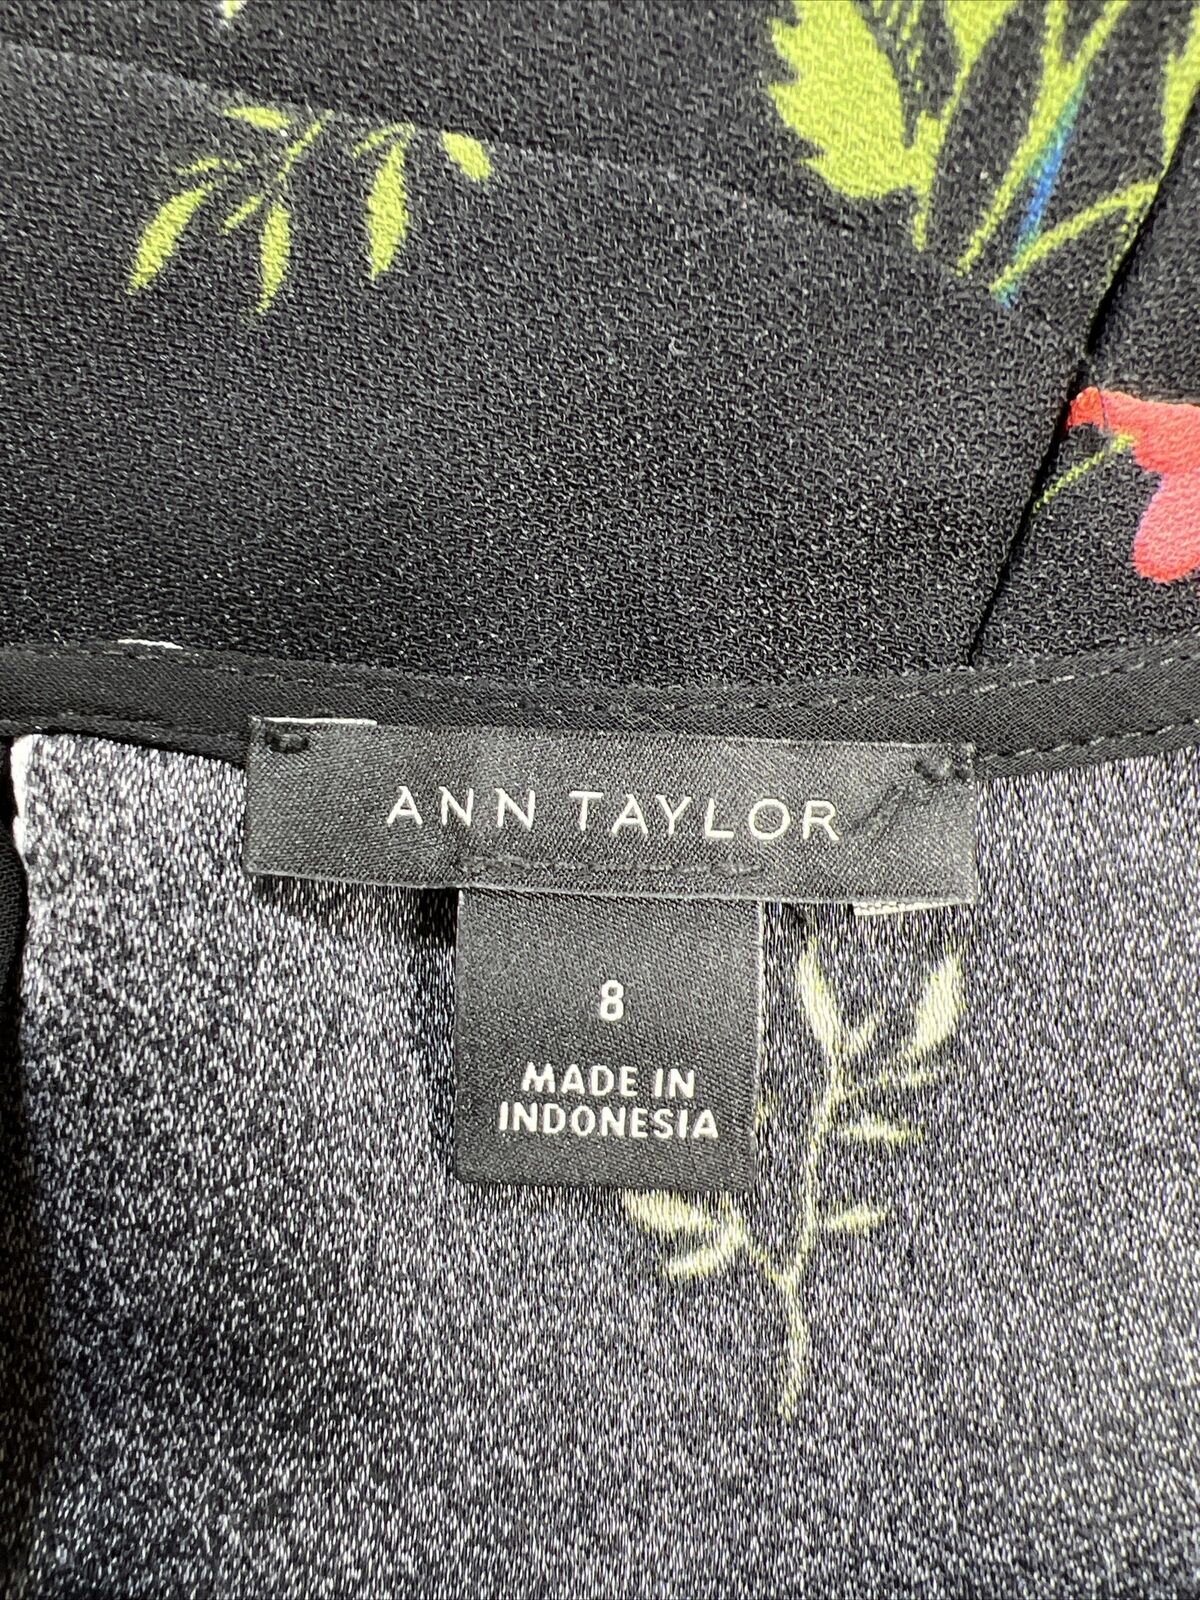 Ann Taylor Vestido recto cruzado de imitación floral negro para mujer - 8